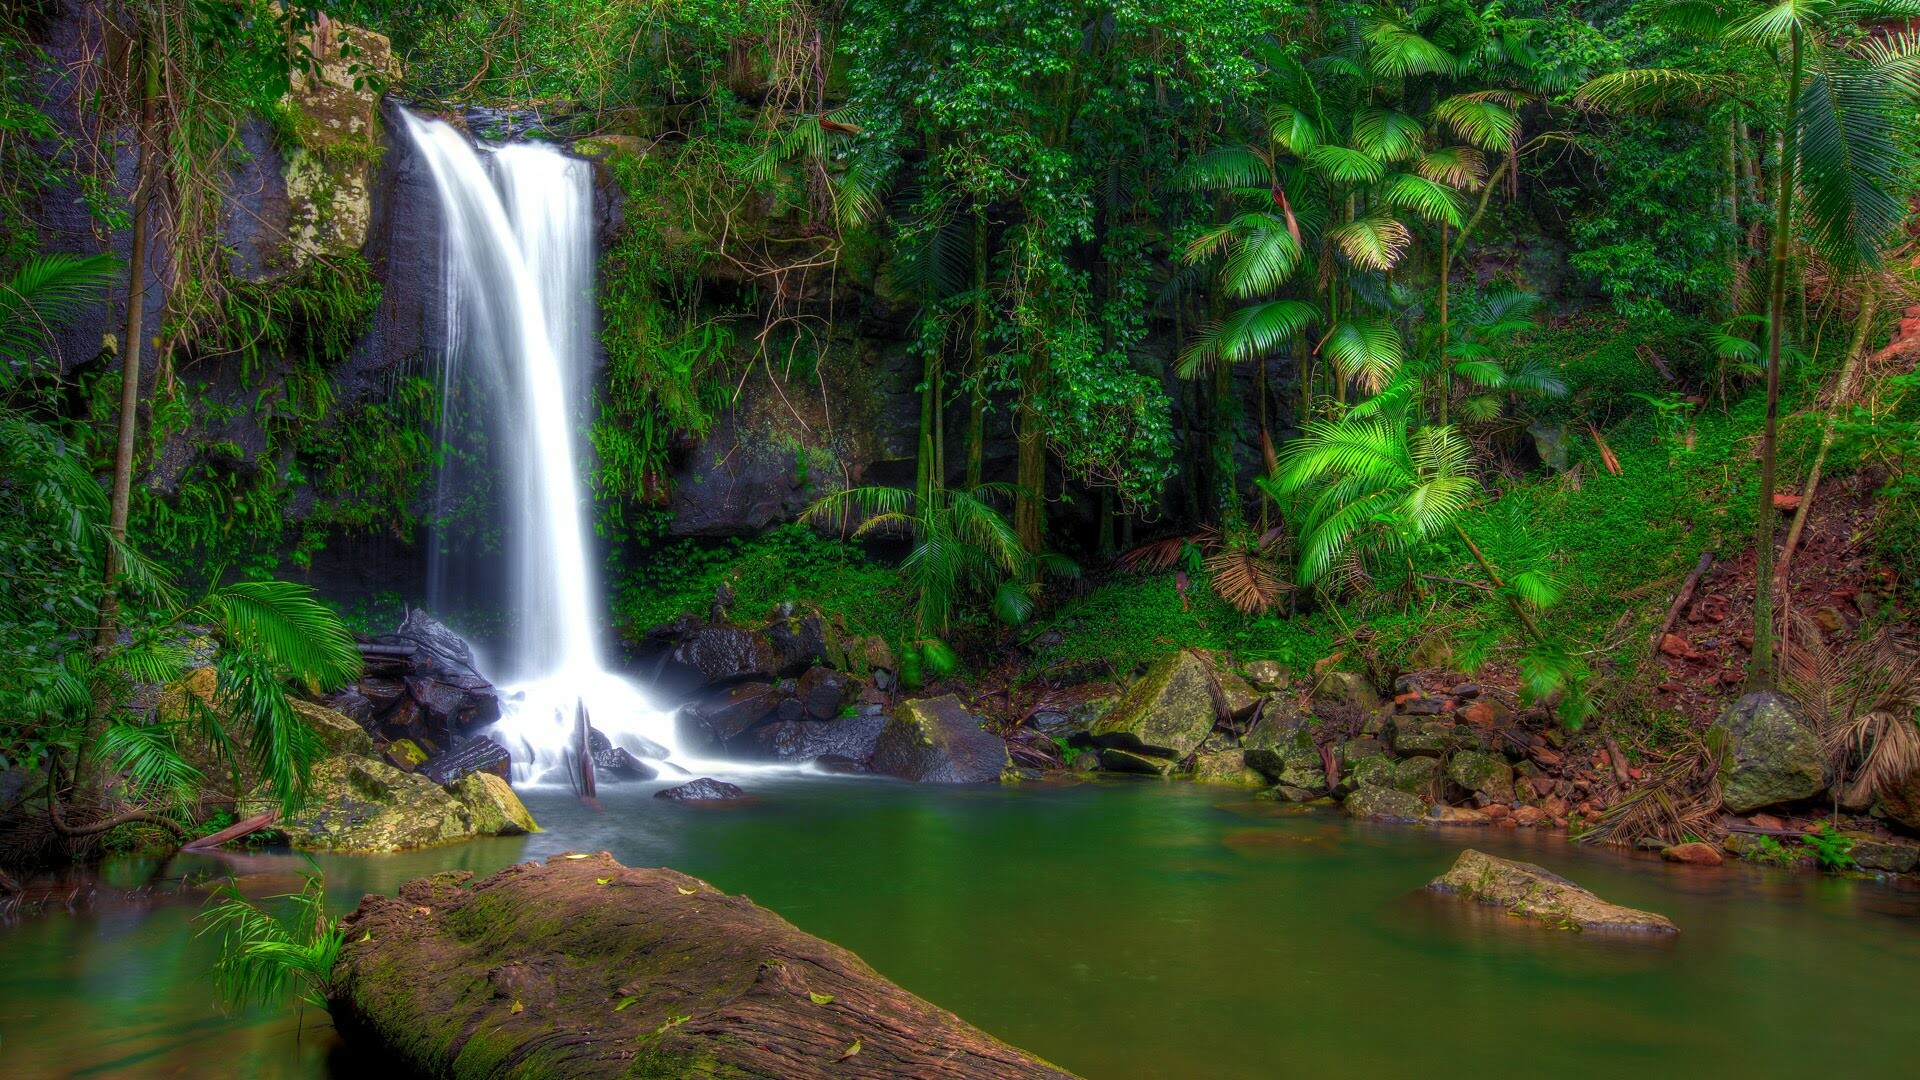 Tropical splendor, Cascading waterfalls, Lush vegetation, Serene rocks, 1920x1080 Full HD Desktop